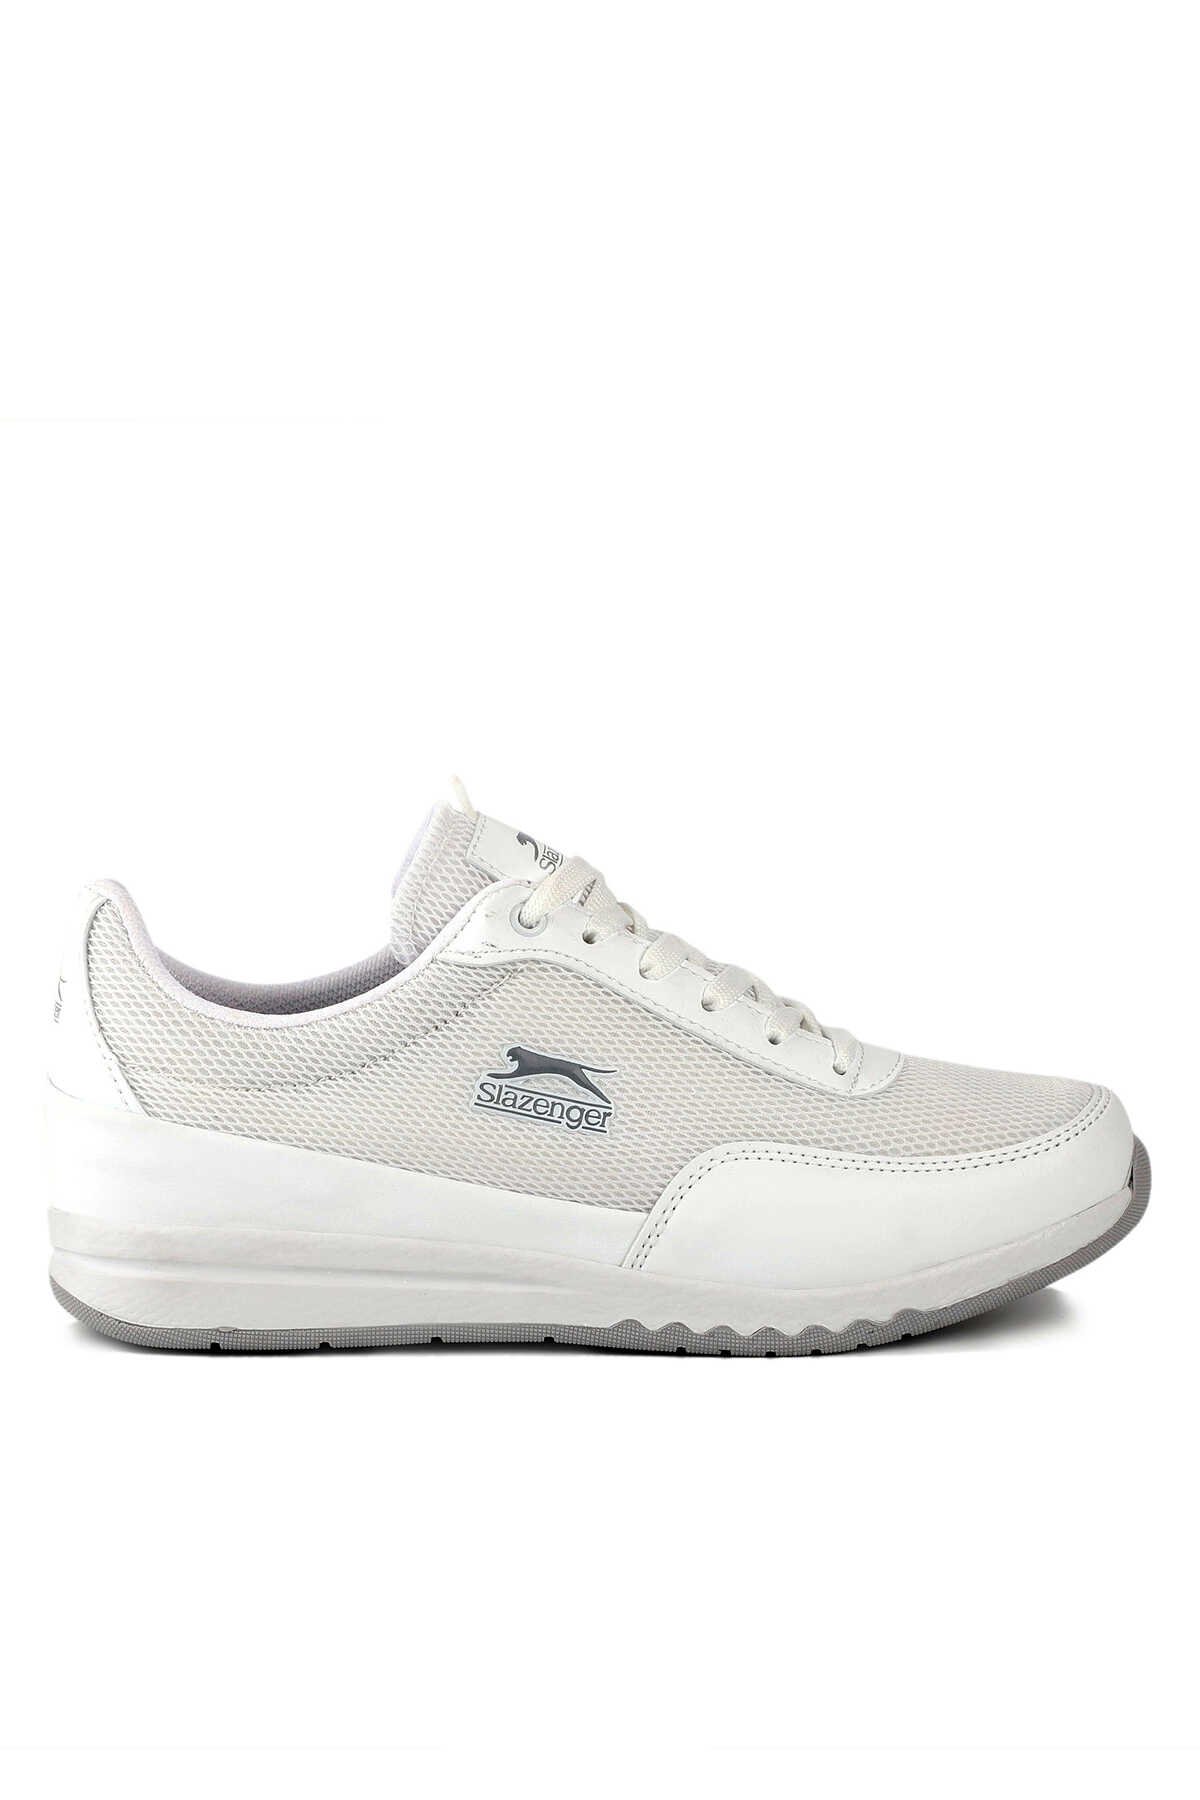 Slazenger - Slazenger ANGLE I Sneaker Kadın Ayakkabı Beyaz / Gri